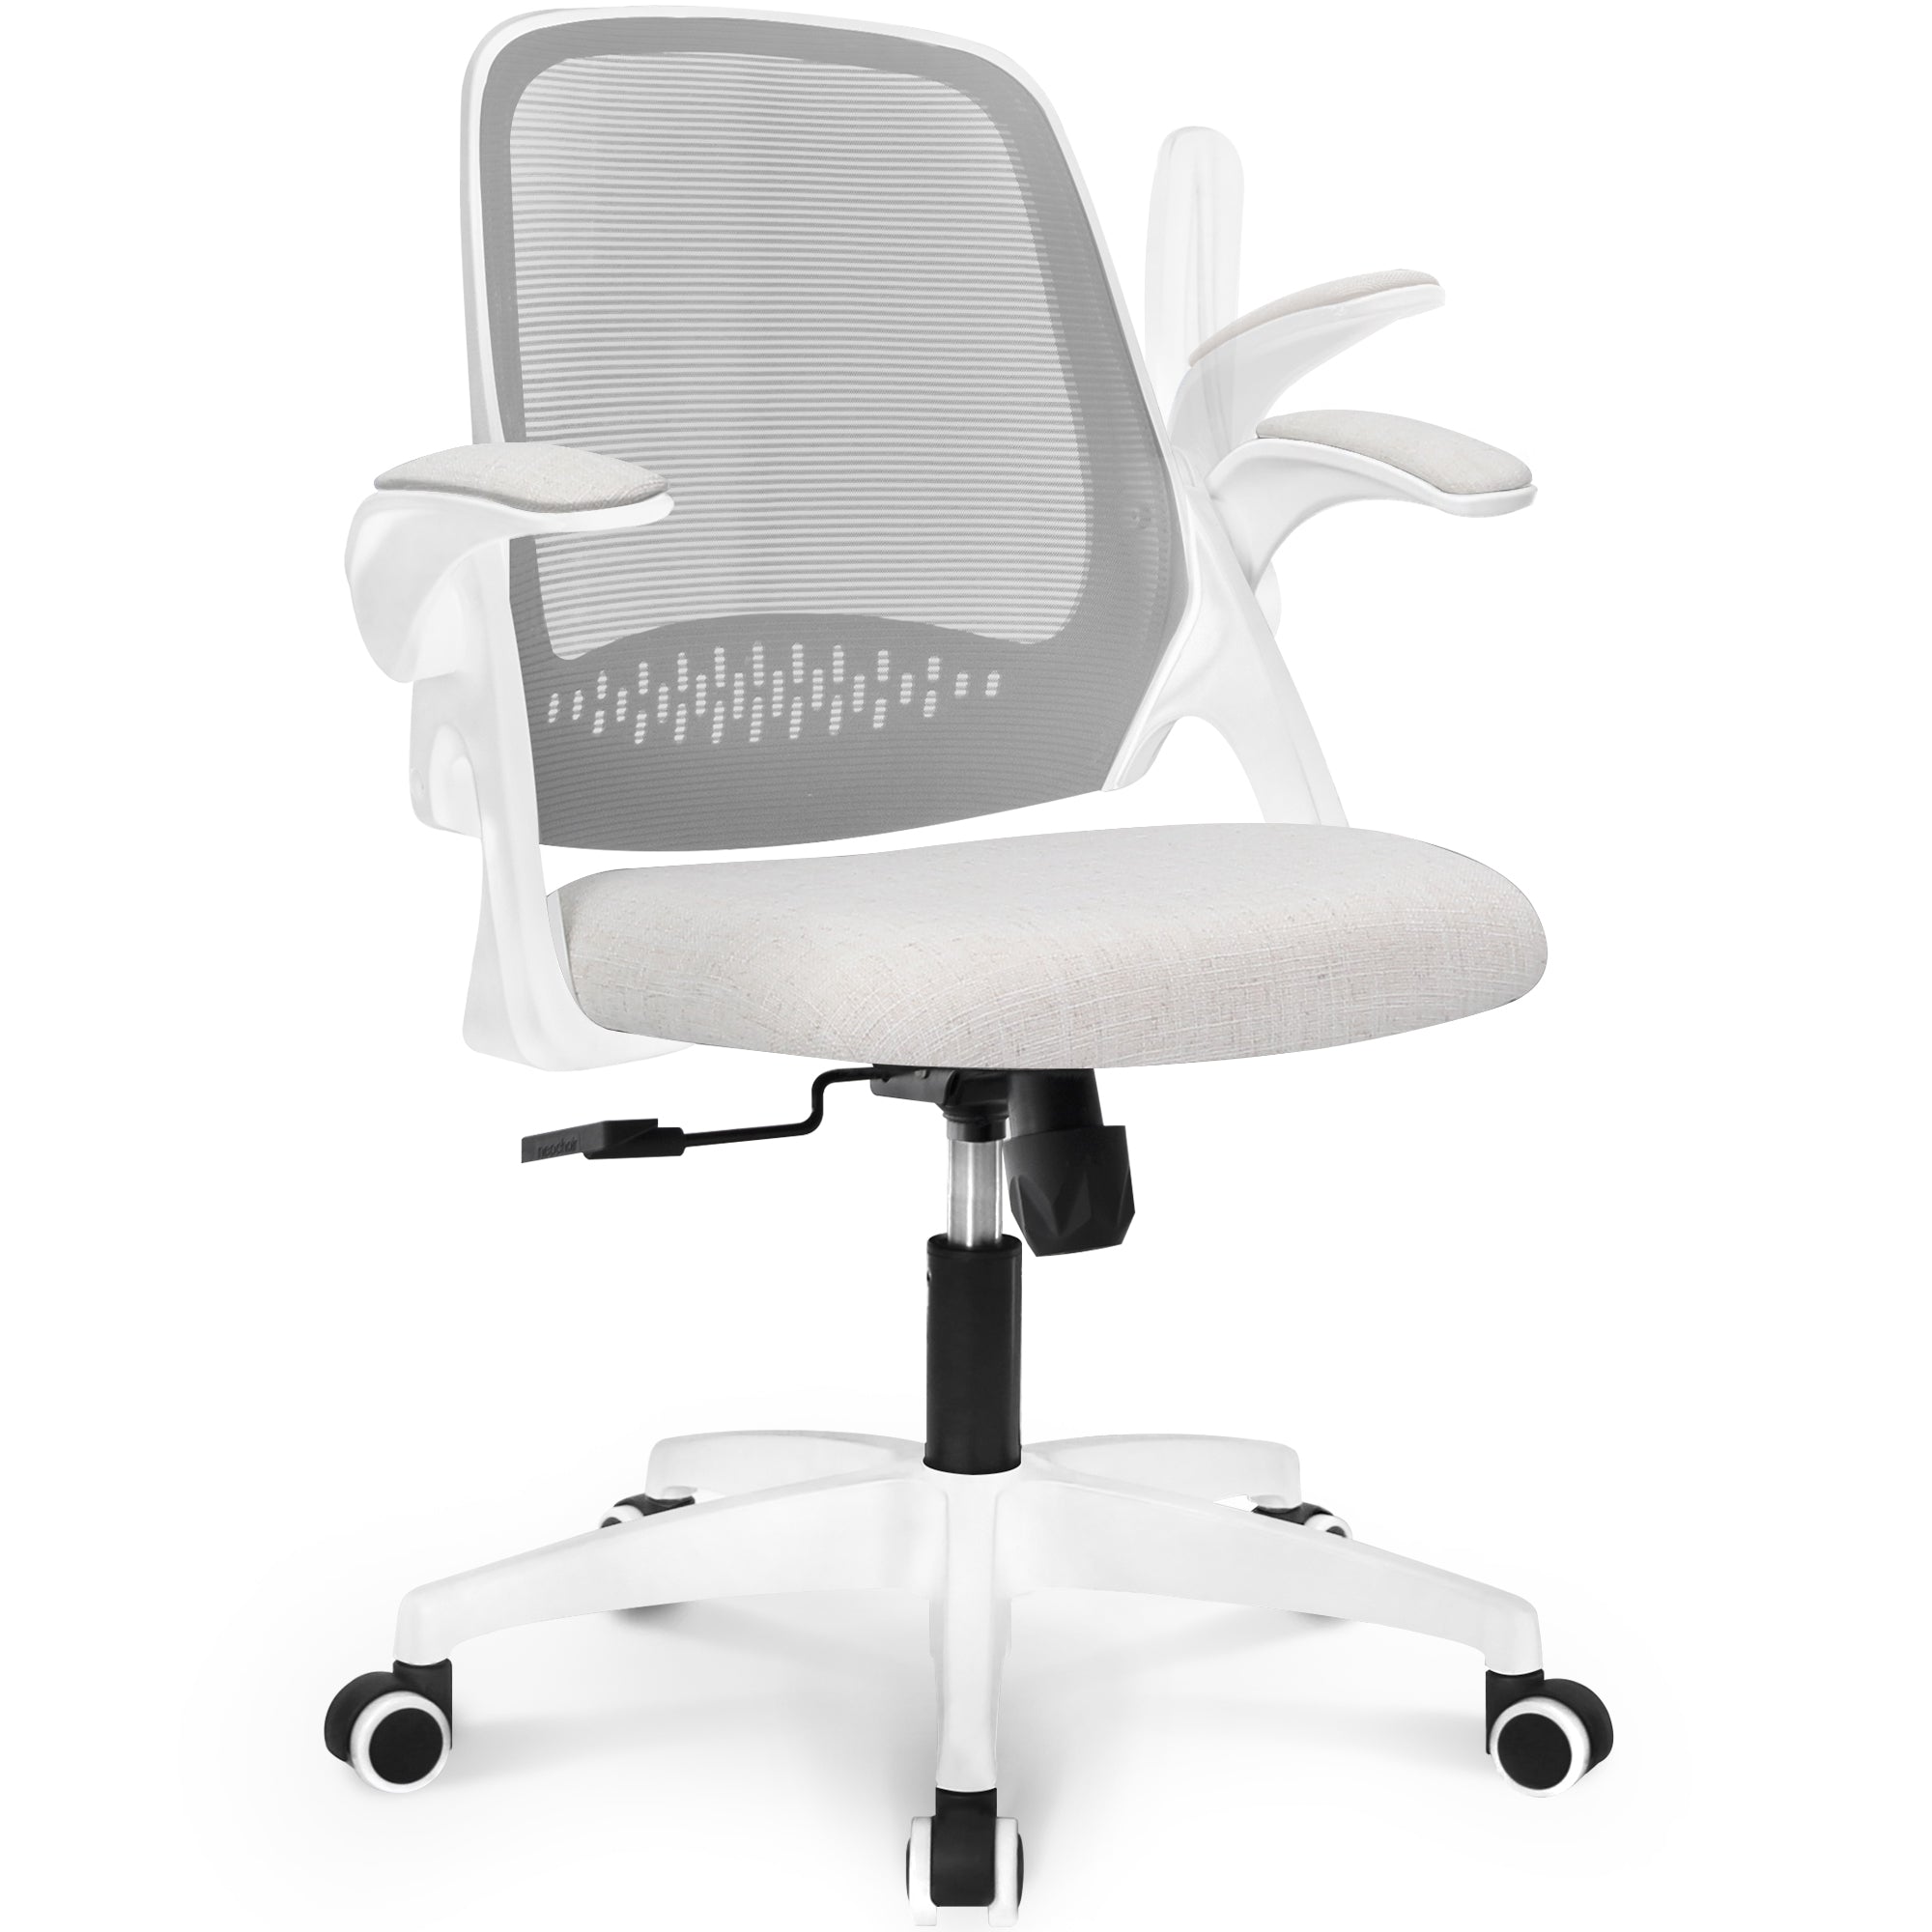 NEC オフィスチェア メッシュ デスクチェア 跳ね上げ式アームレスト 事務椅子 人間工学 PCチェア アイボリー